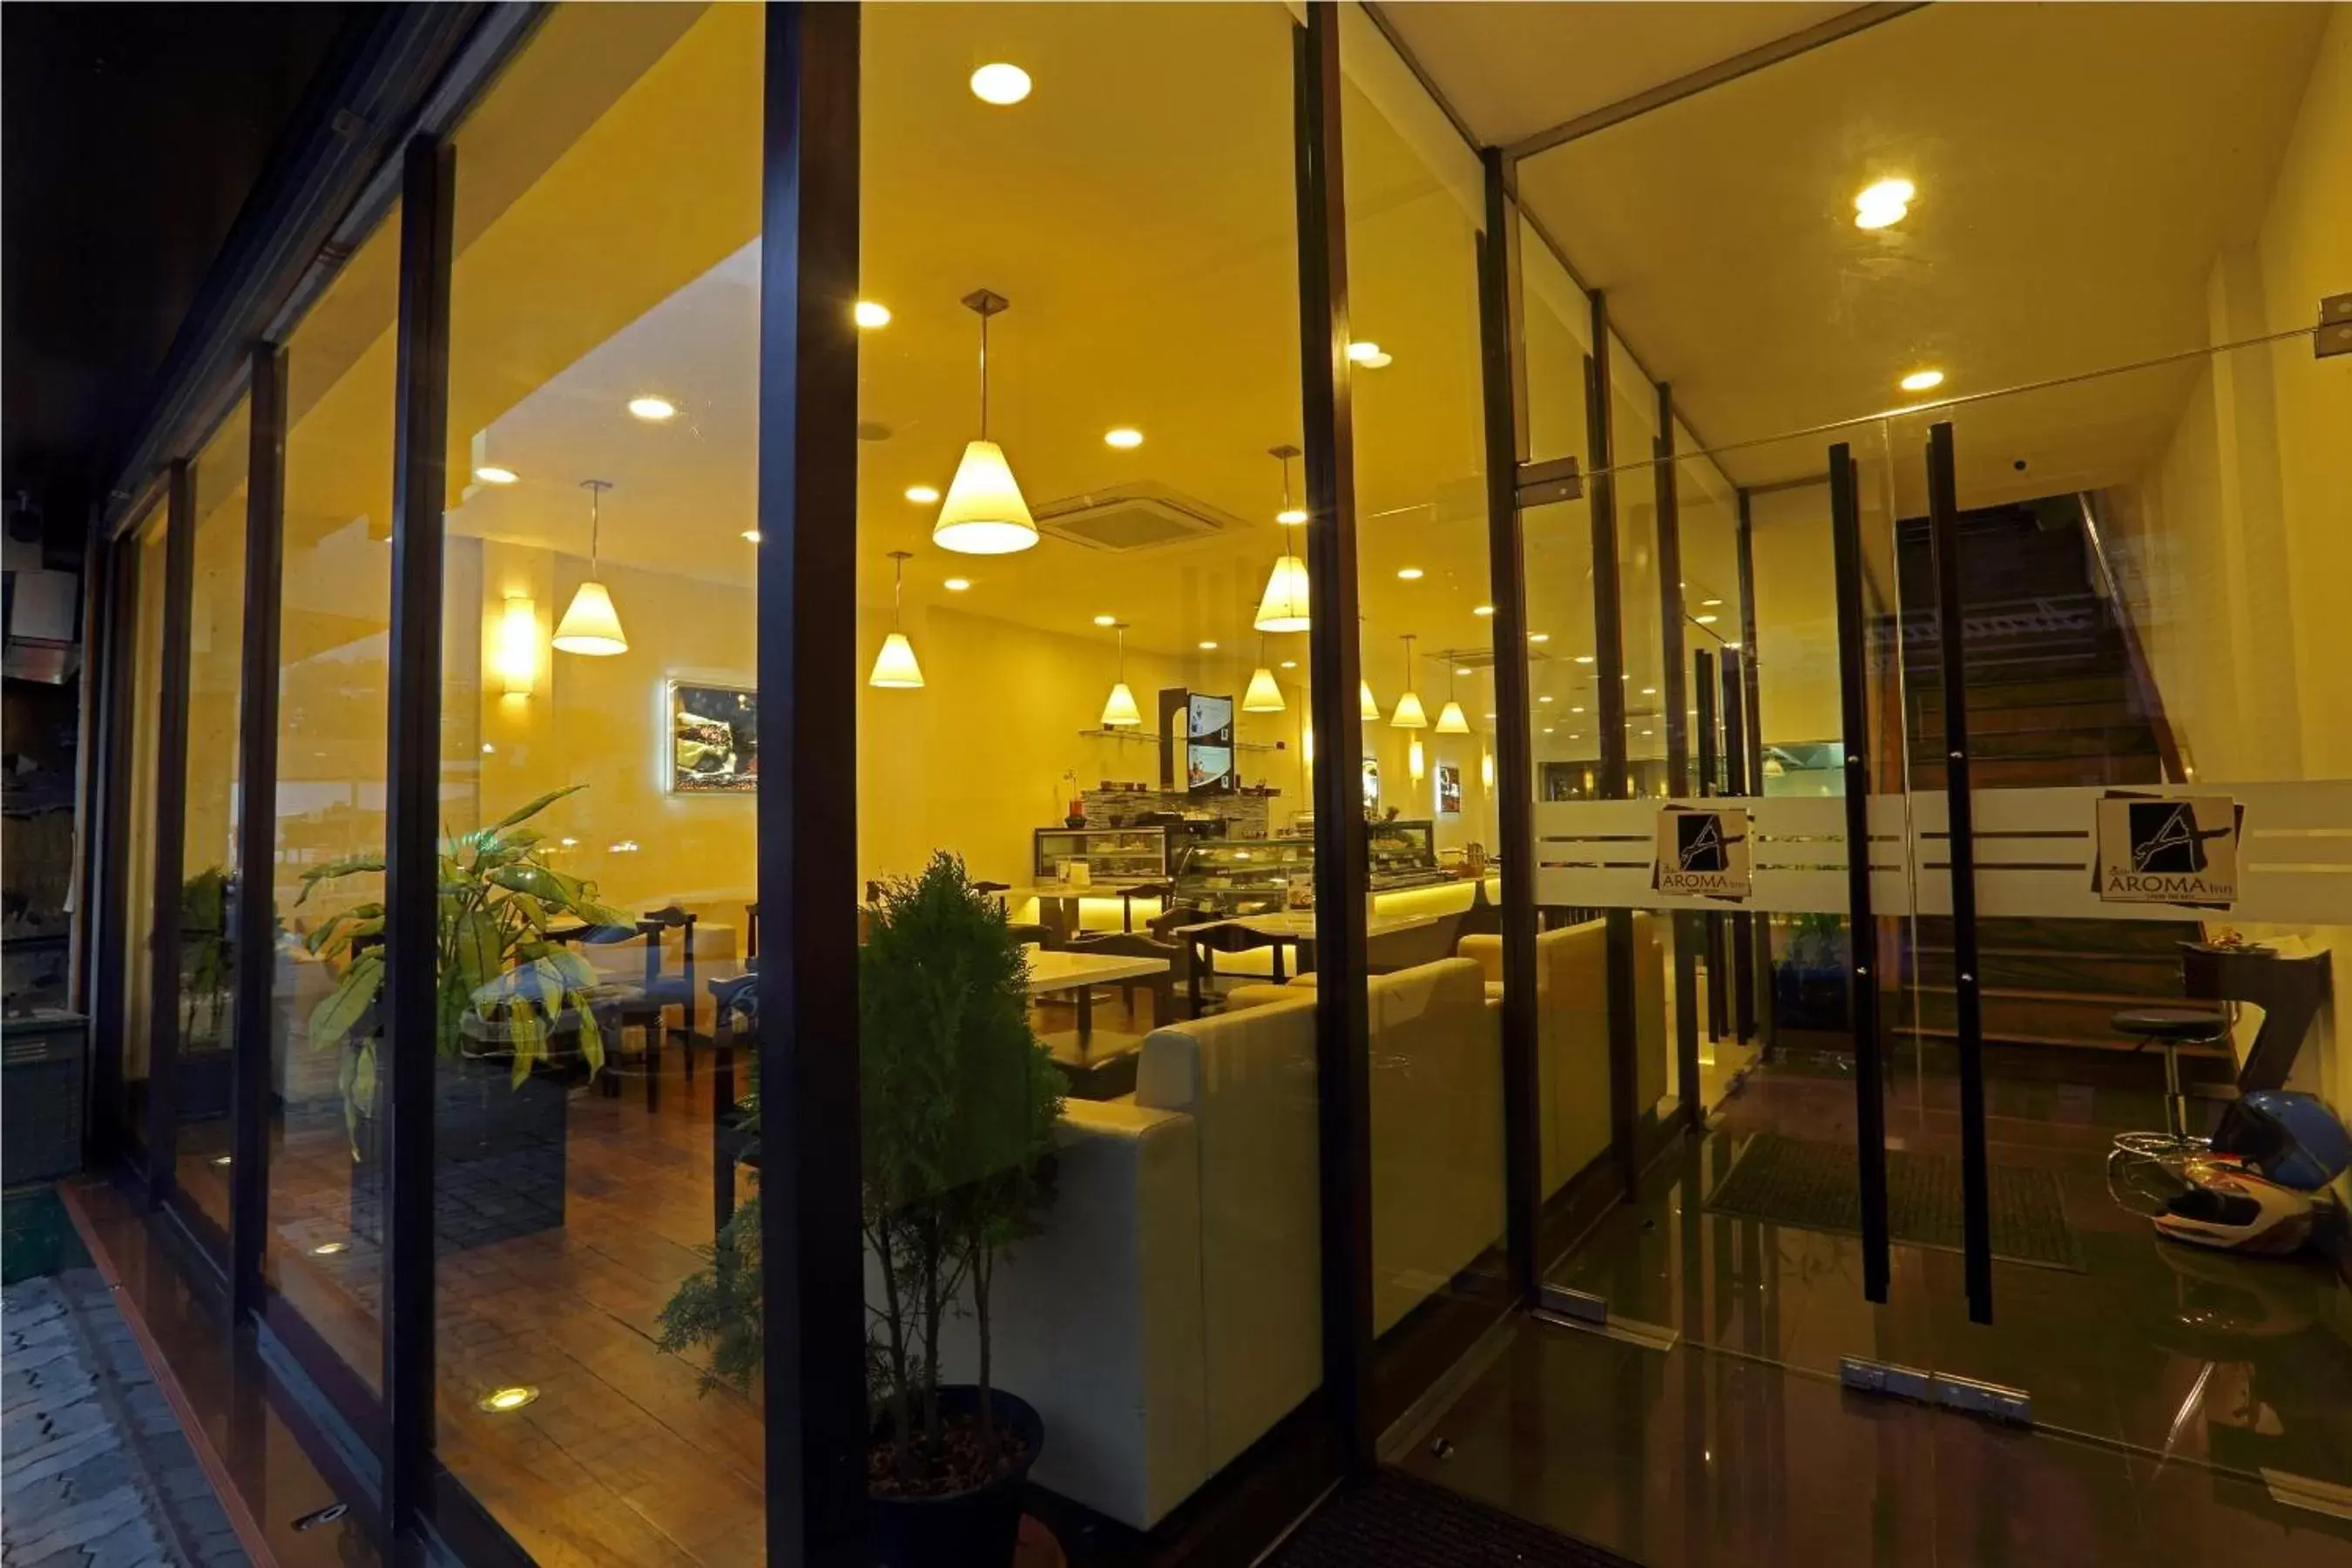 Facade/entrance in Cafe Aroma Inn